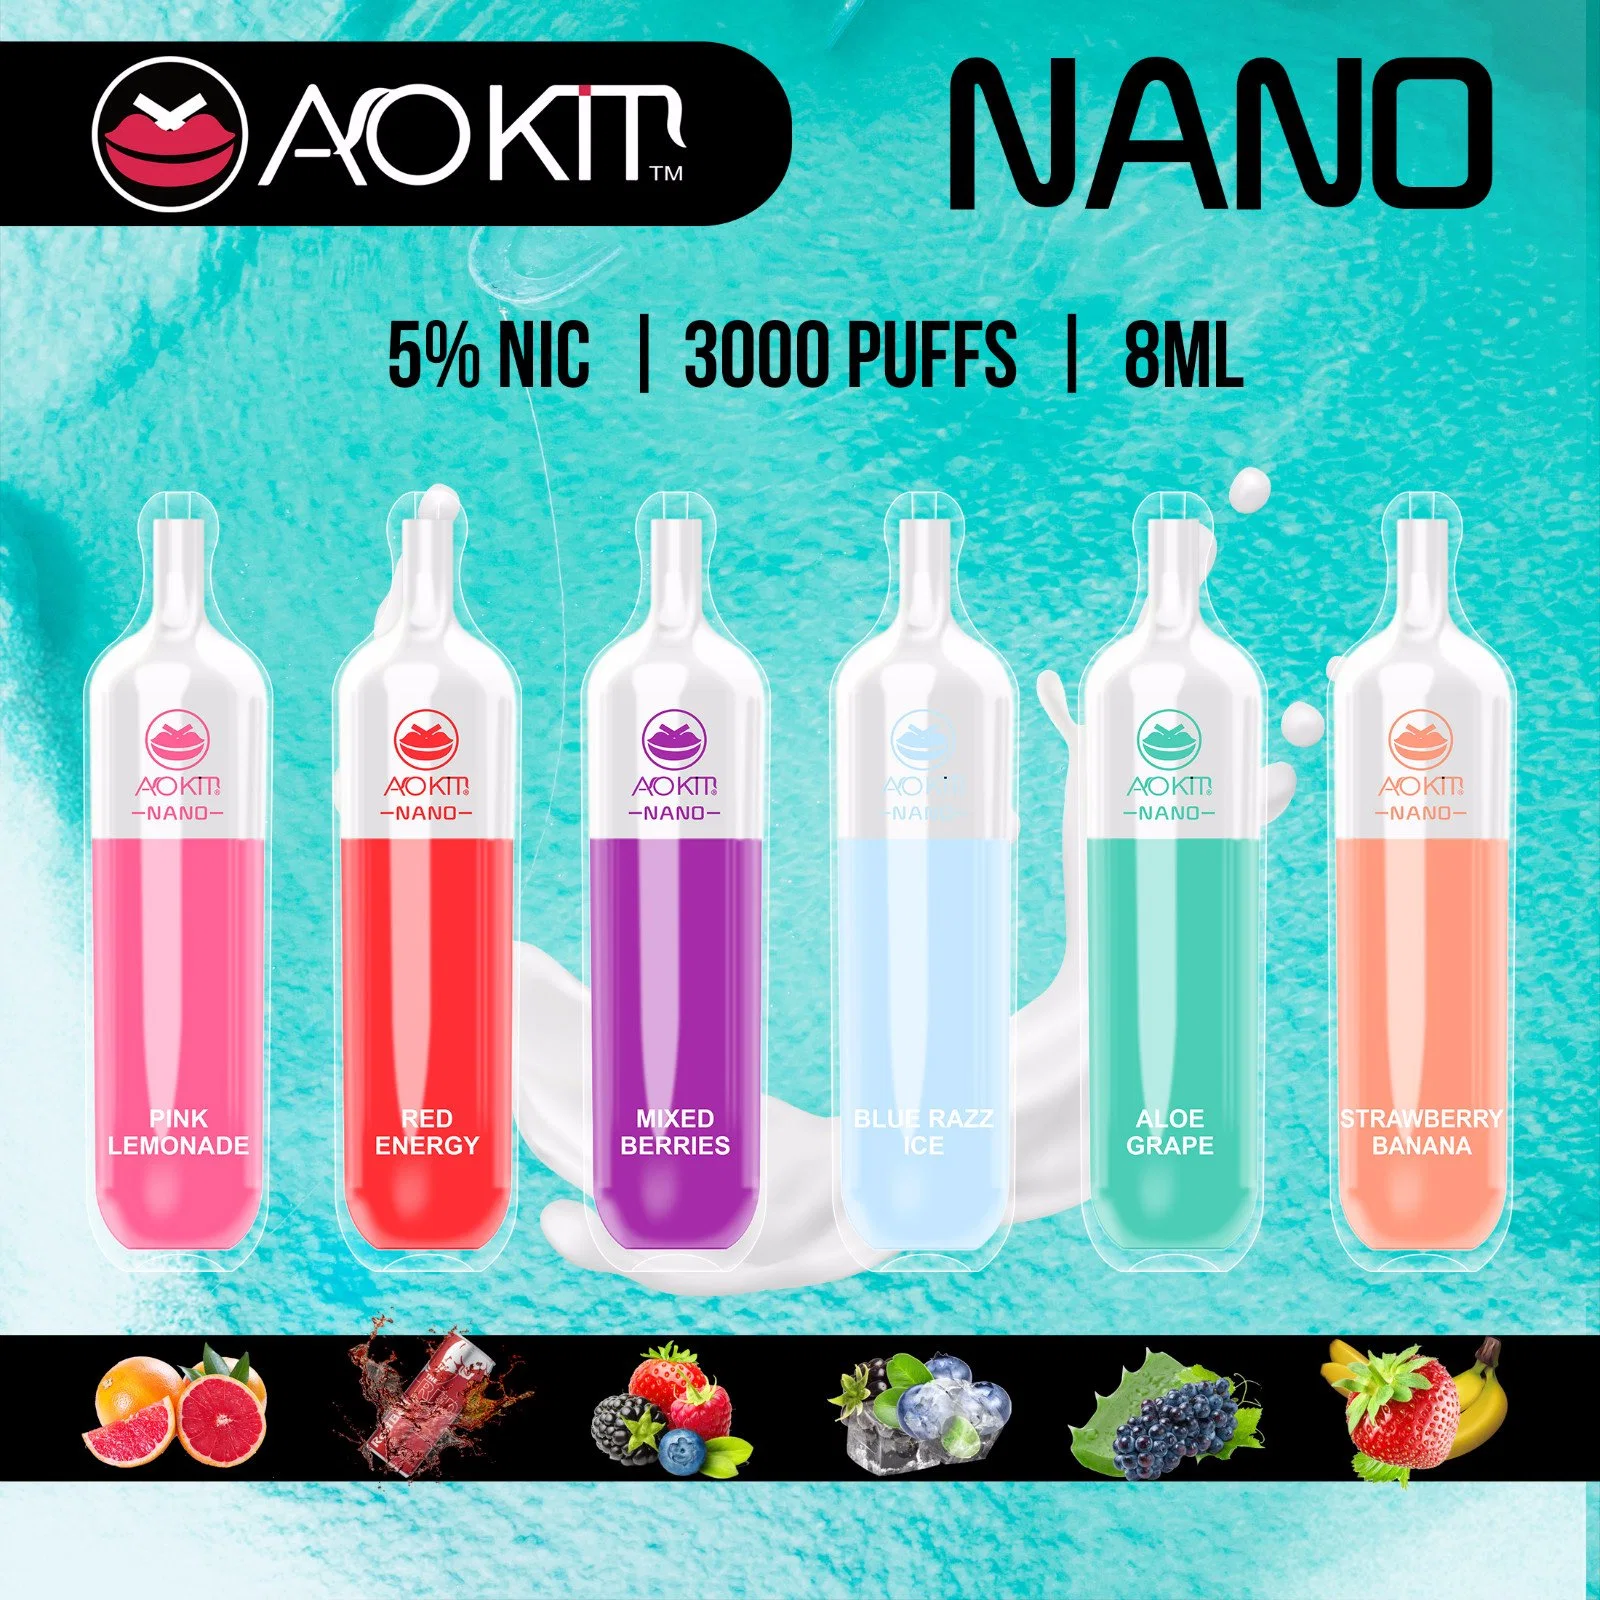 Usine Aokit direct des prix Nano 3000puff Nouveau modèle Vape stylo jetable OEM ODM Bienvenue